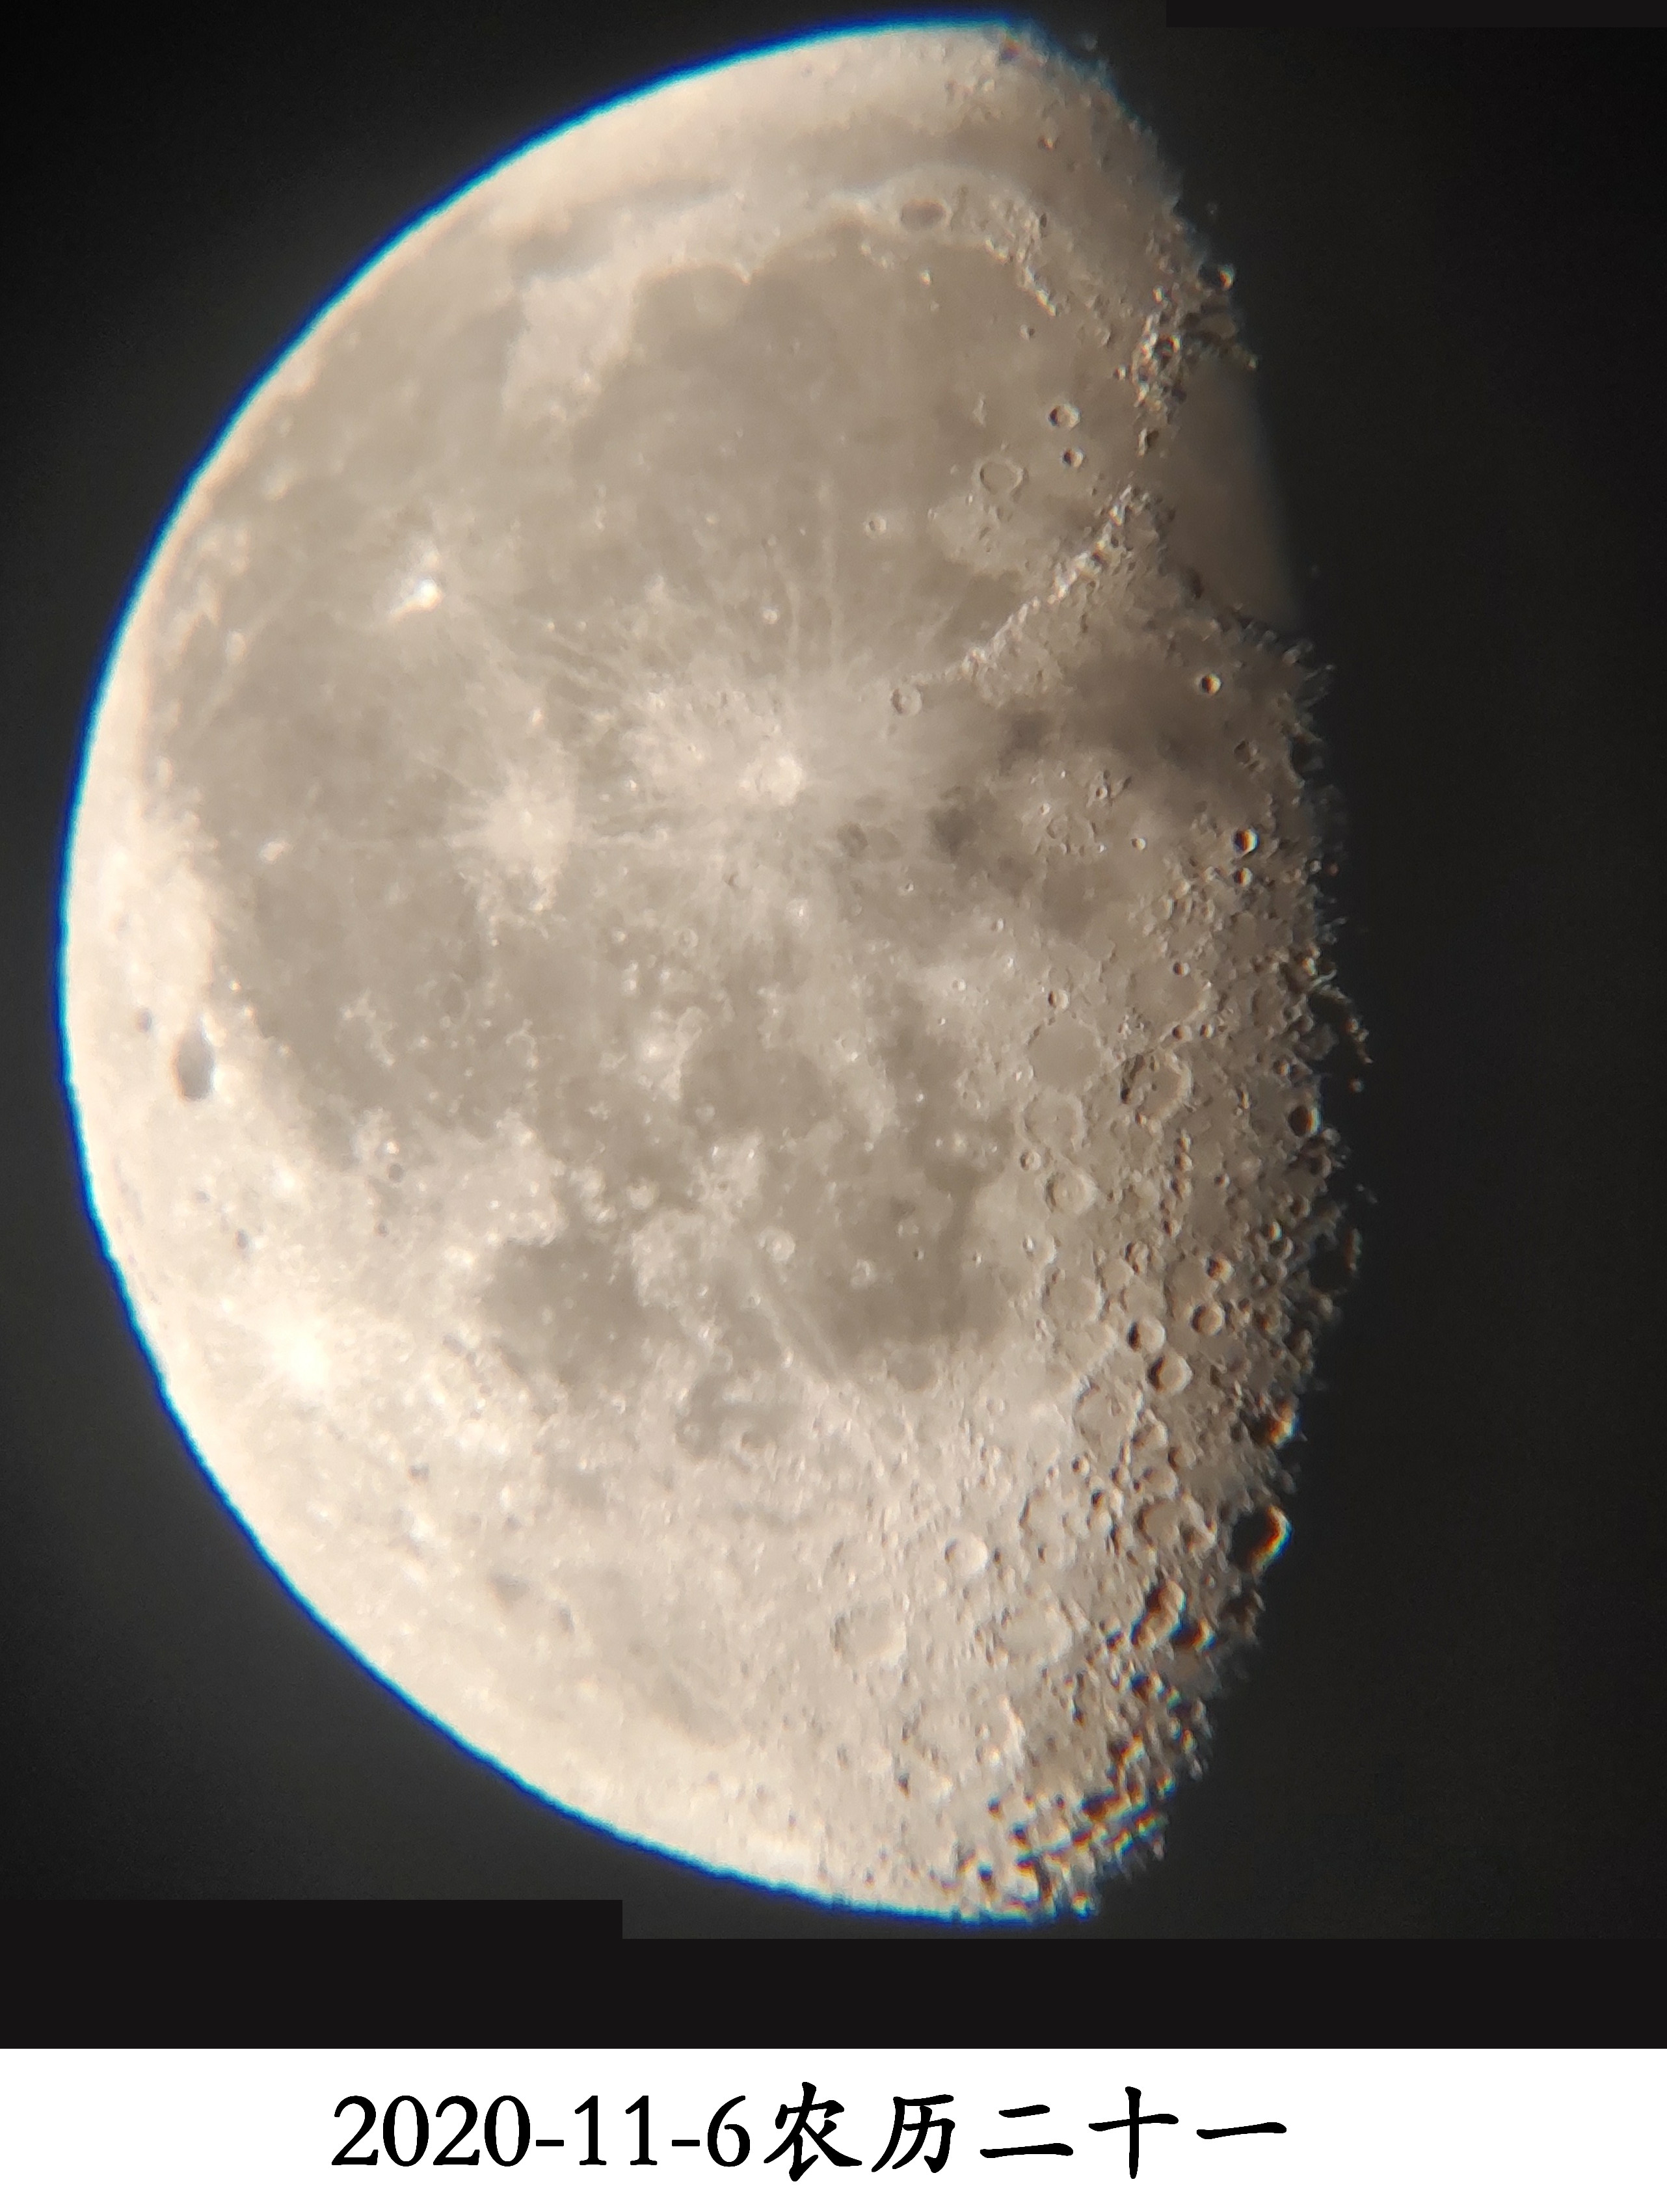 月亮的变化规律和图片,初一到十五月亮的变化规律和图片